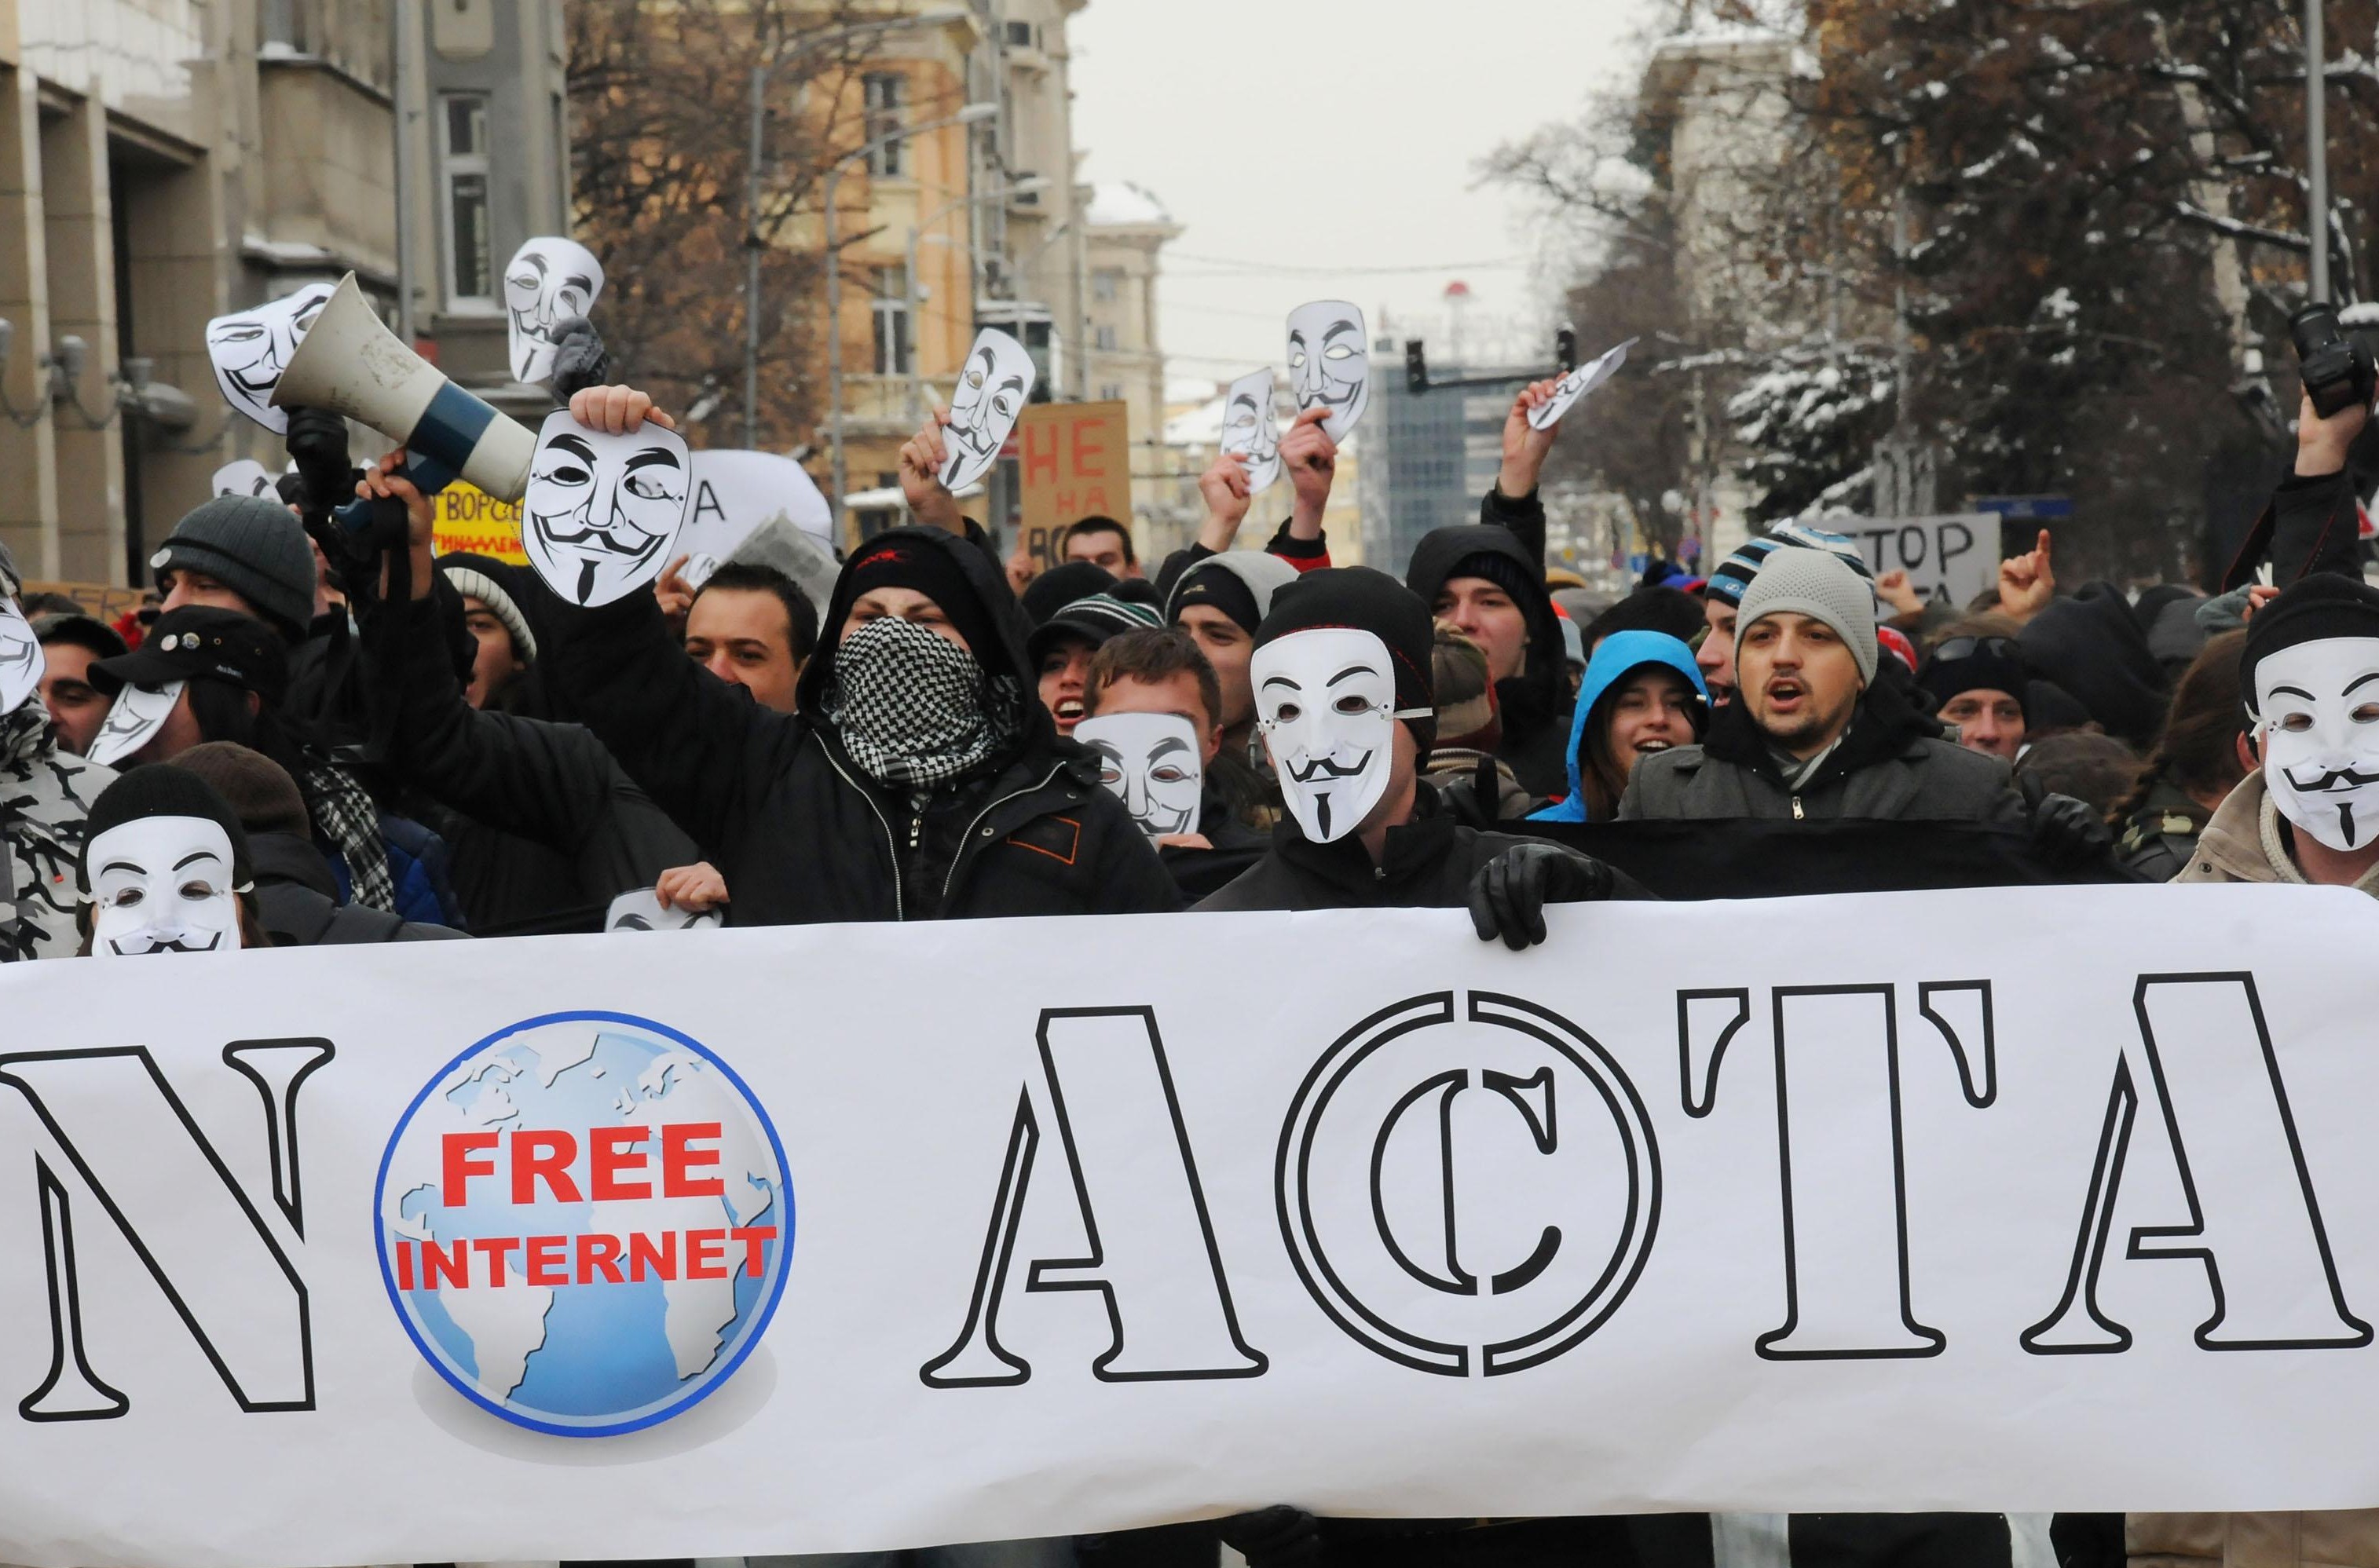 България оттегля подписа си от АСТА в сряда